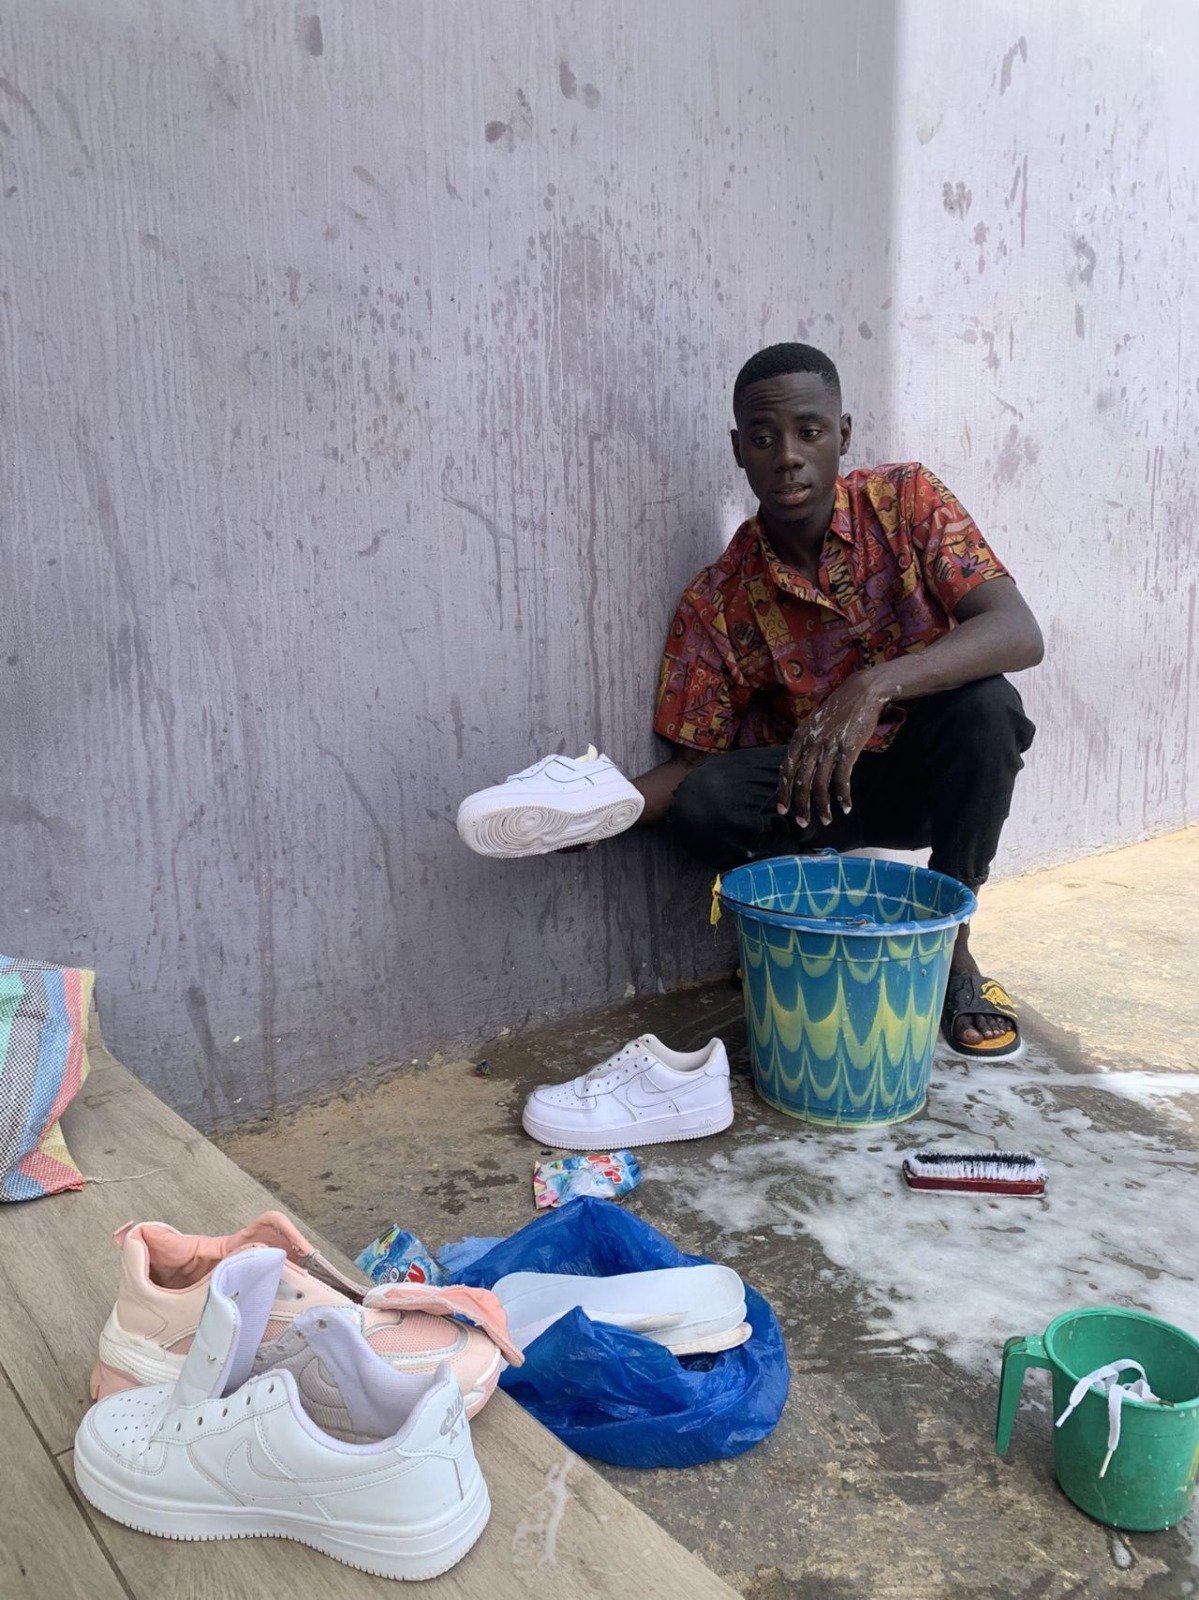 WhatsApp Image 2022 06 27 at 12.12.36 - Entreprenariat: Un étudient créé un service de lavage de chaussures à L’Université du Sénégal.